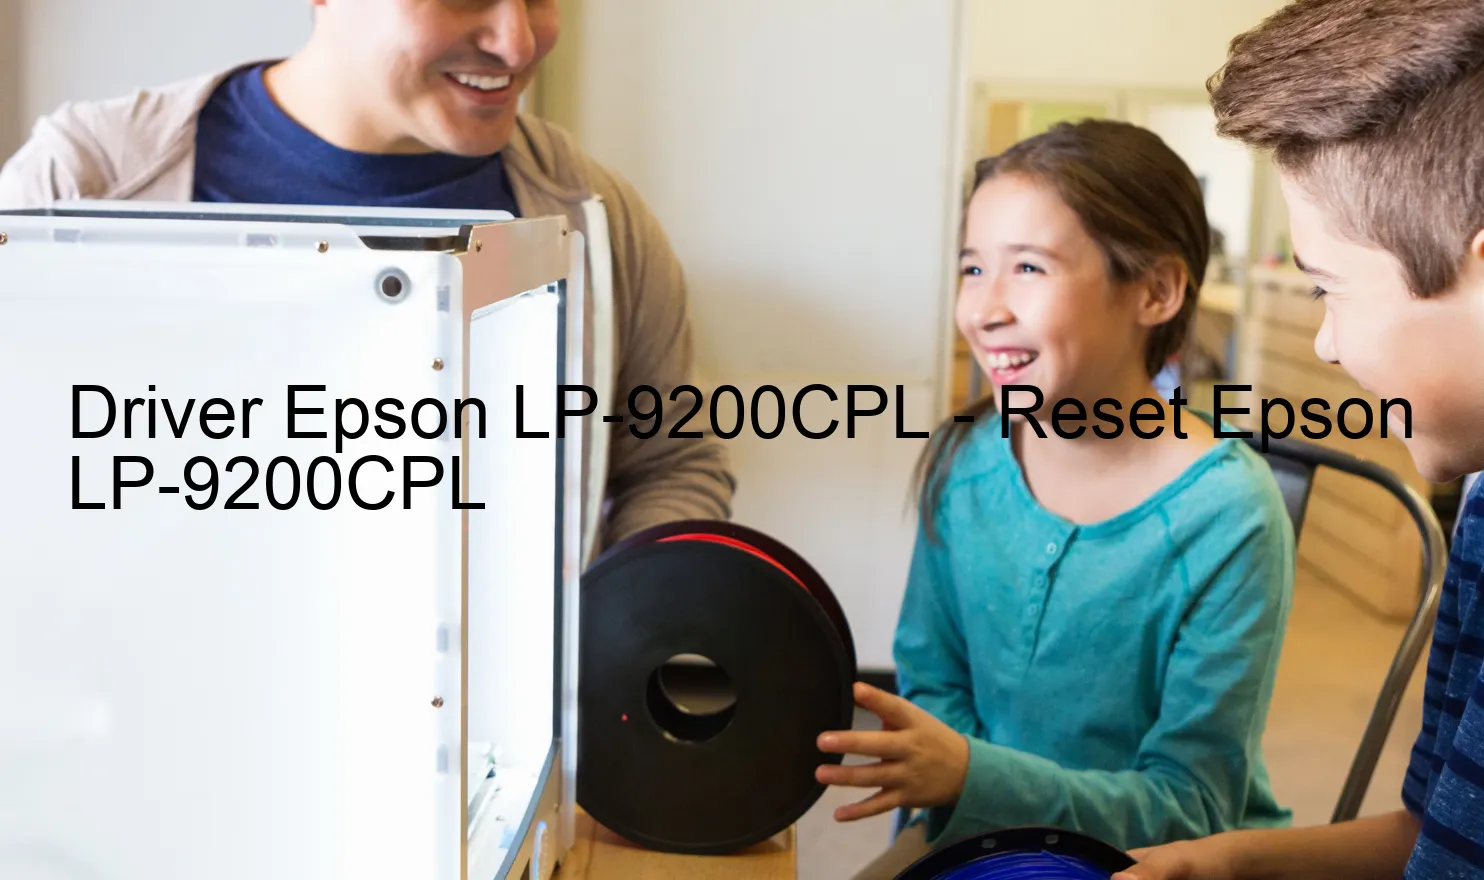 Epson LP-9200CPLのドライバー、Epson LP-9200CPLのリセットソフトウェア